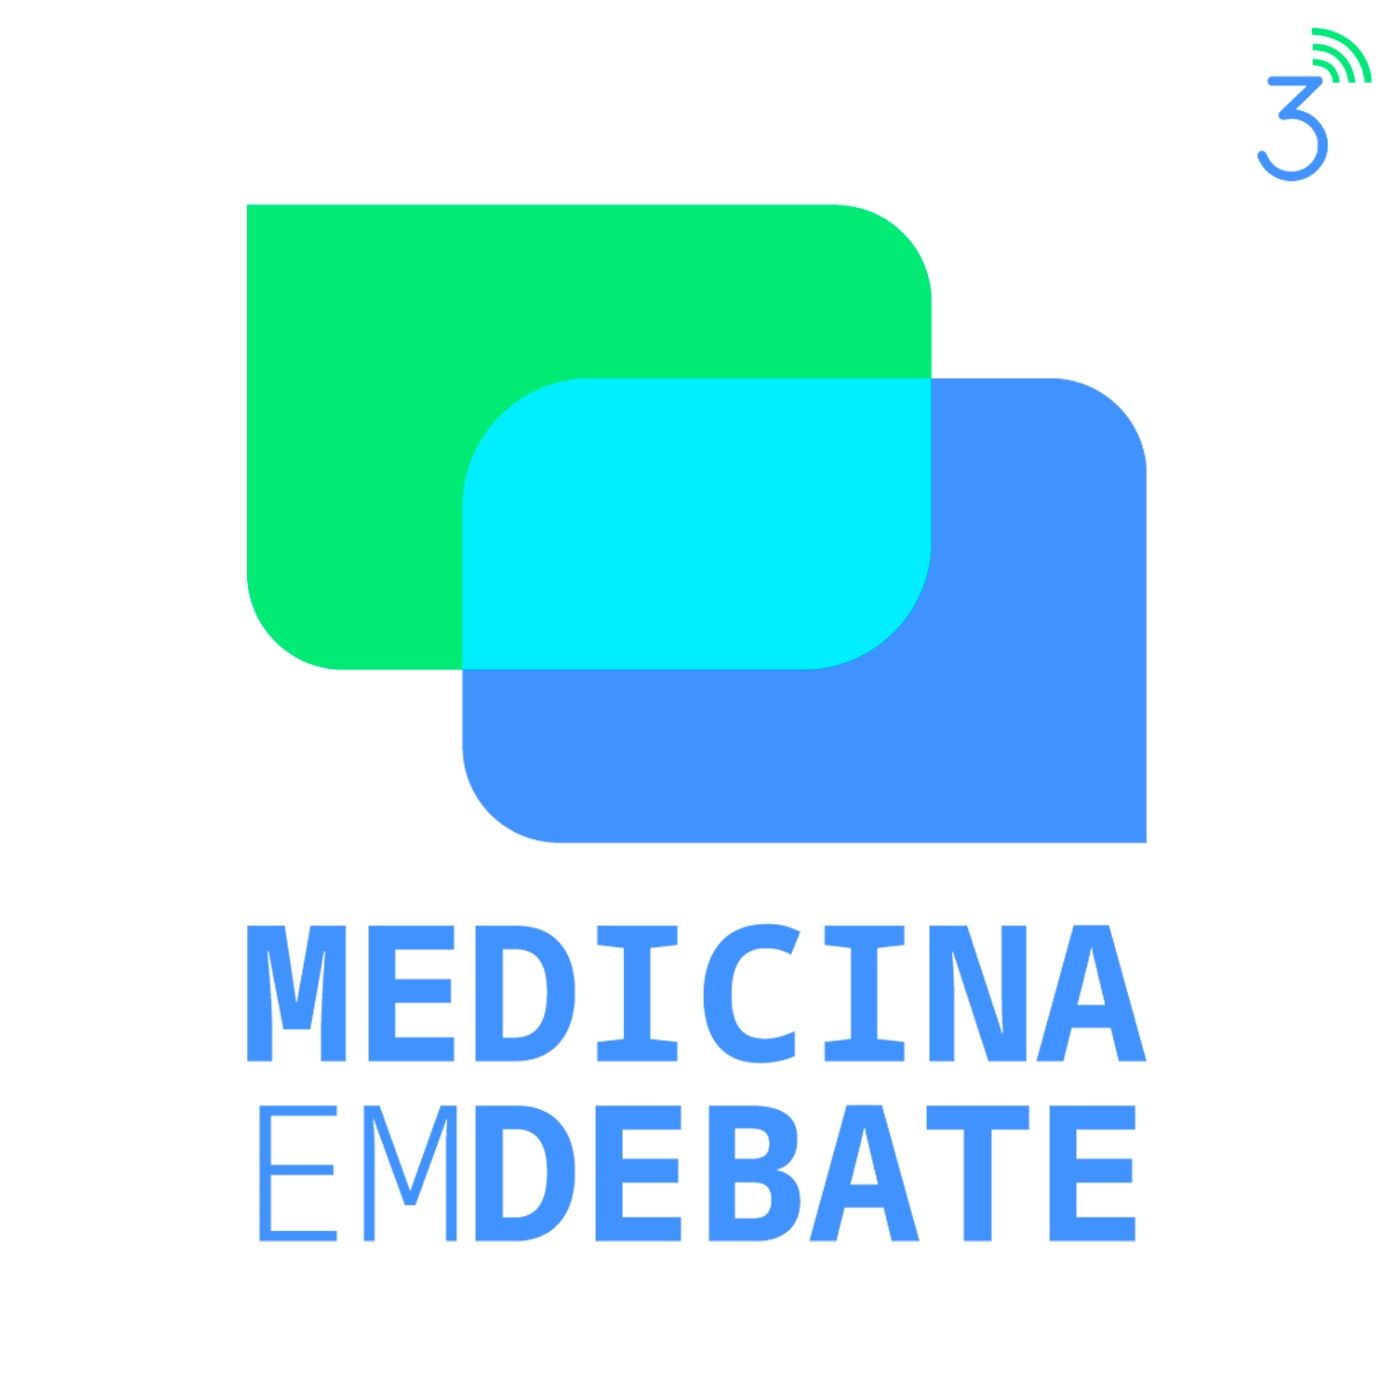 Medicina em Debate:Central3 Podcasts